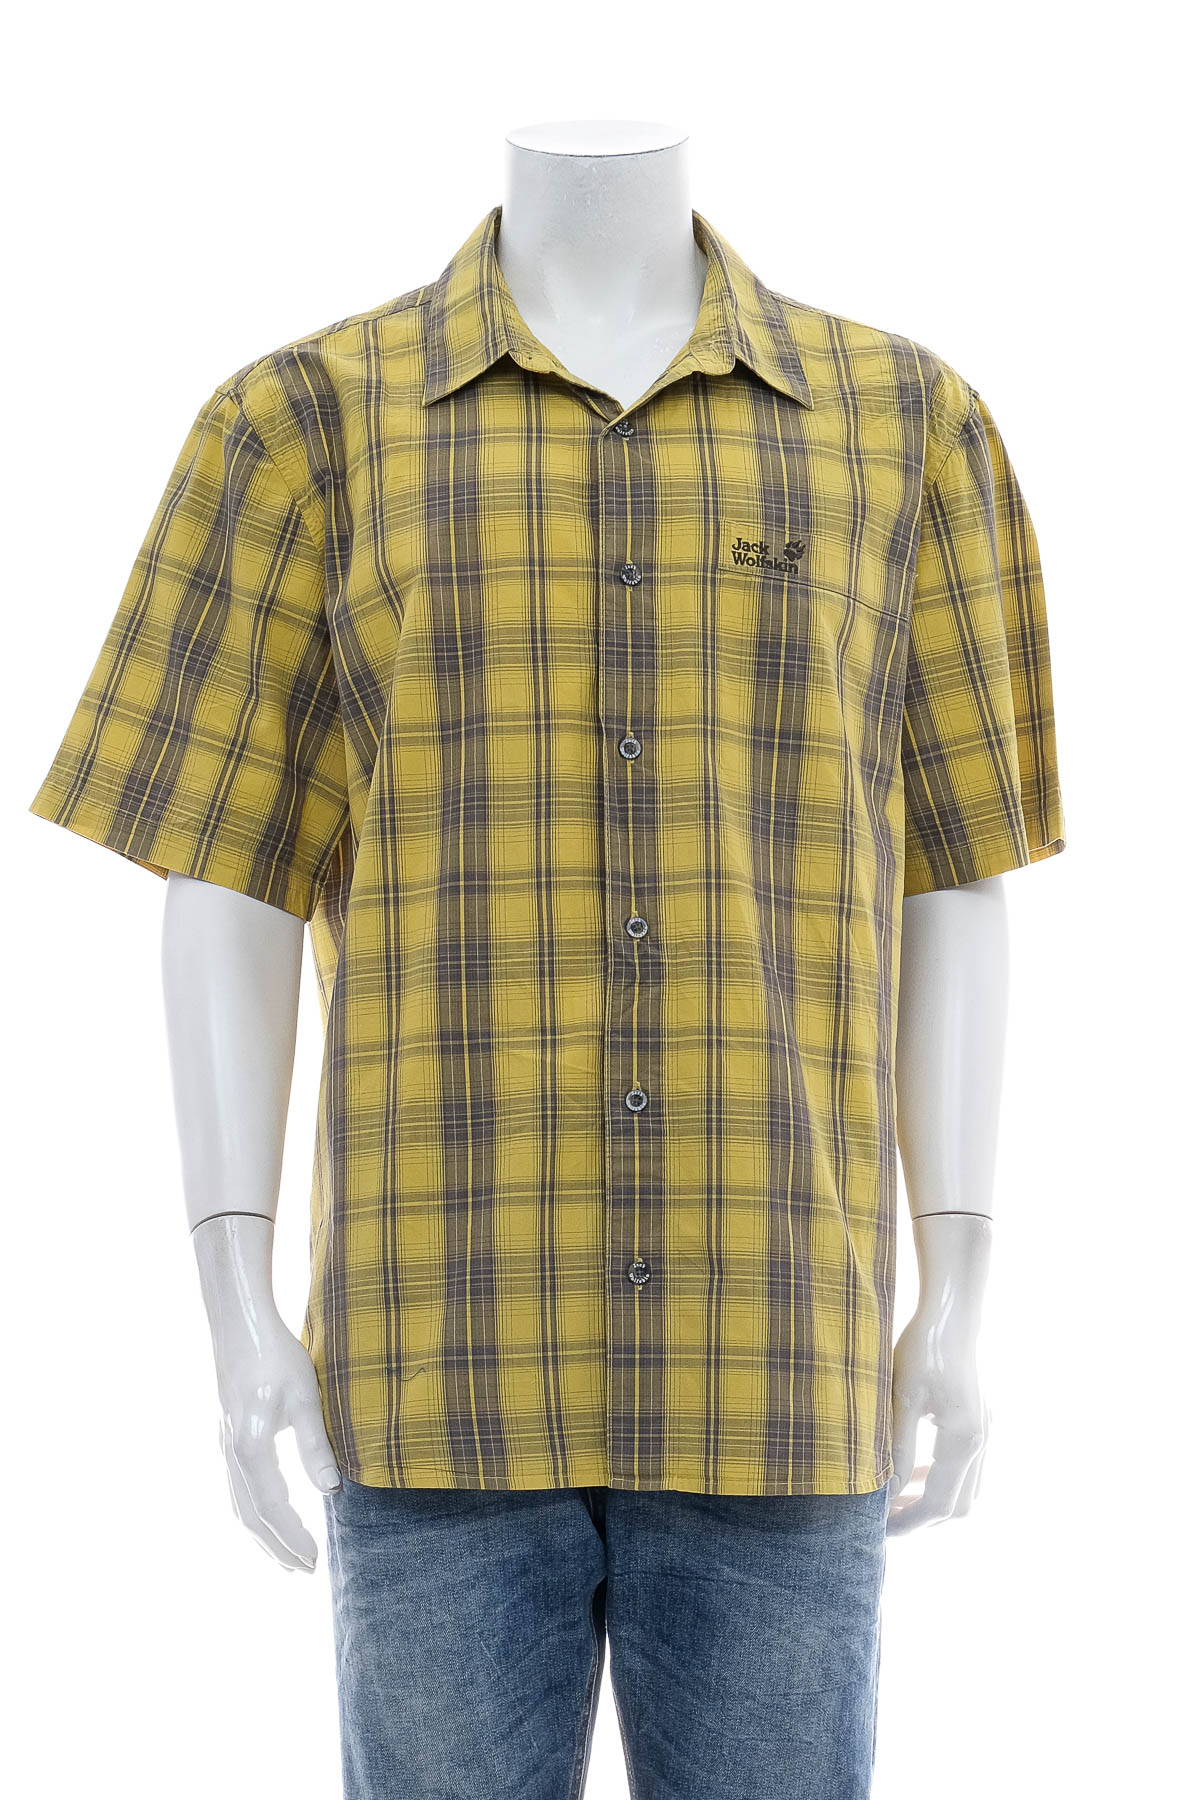 Men's shirt - Jack Wolfskin - 0